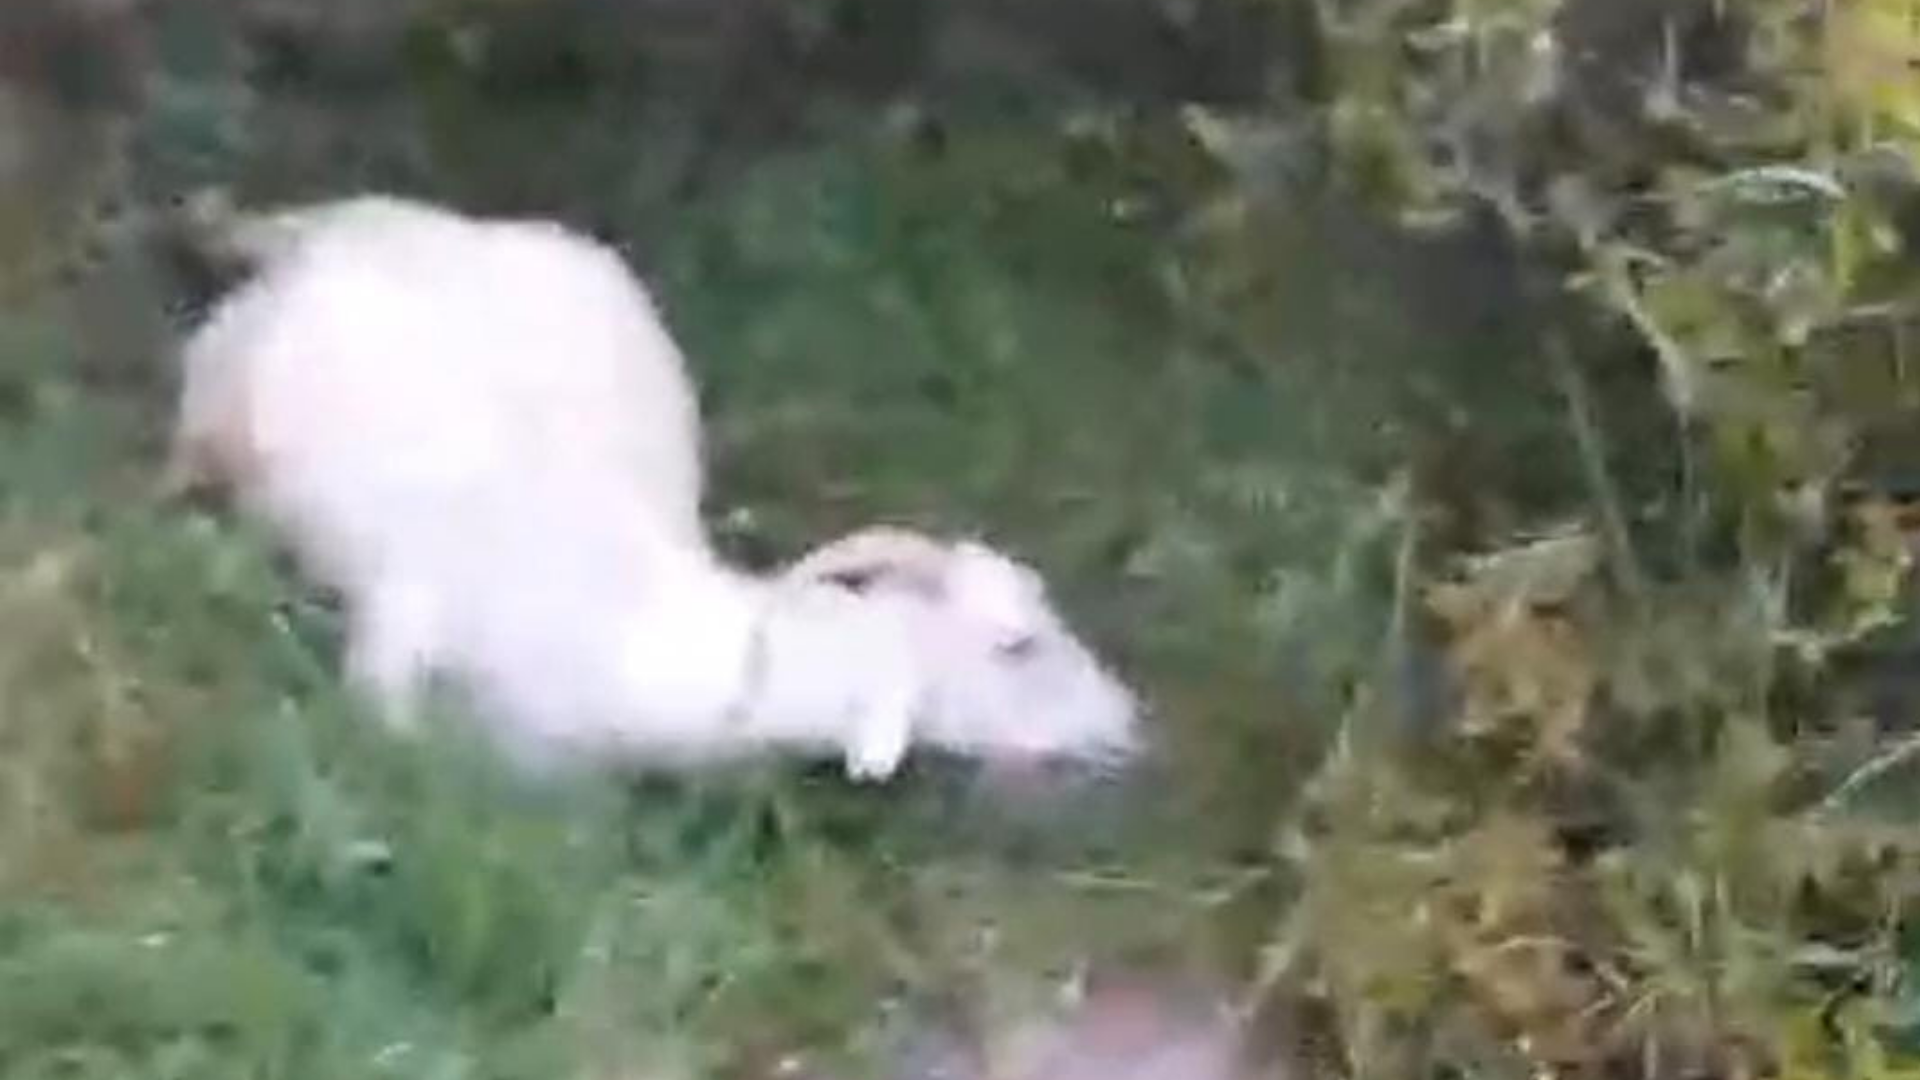 Bergama’da keçiler birer birer öldü: Sebebi katı atık tesisi mi?